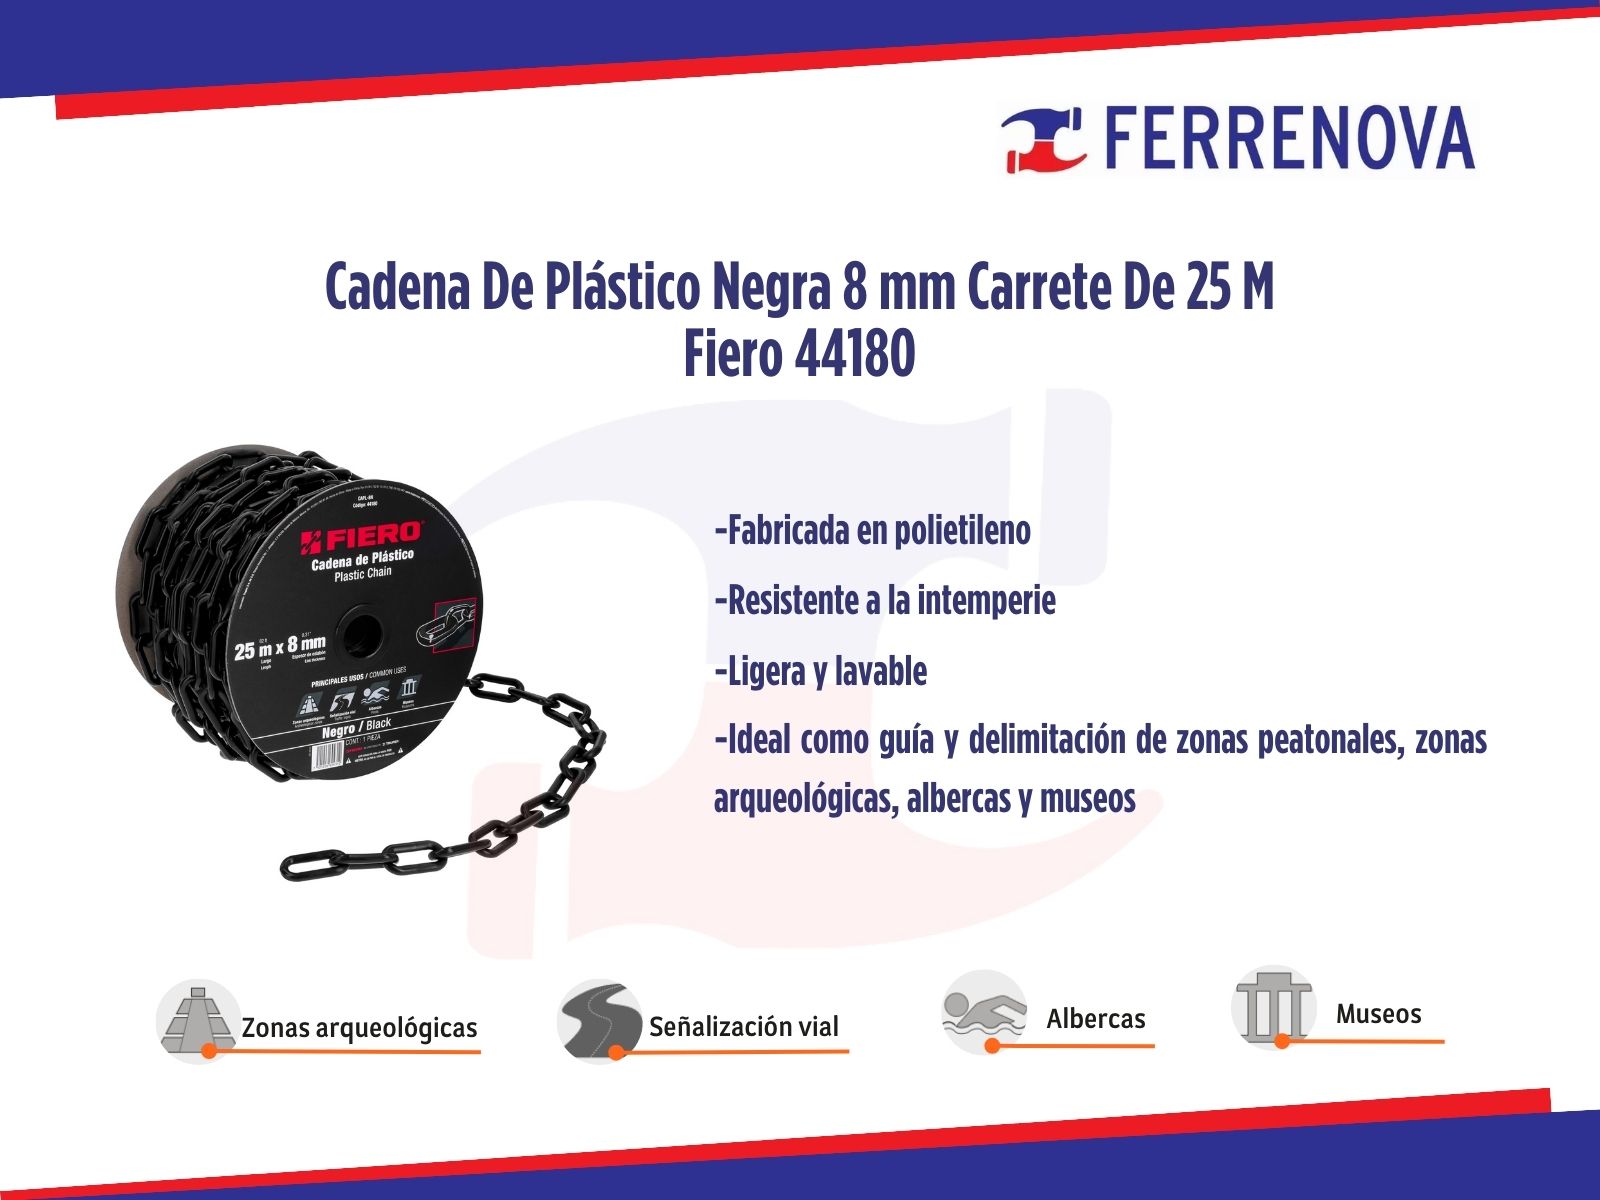 Cadena De Plástico Negra 8 mm Carrete De 25 M Fiero 44180